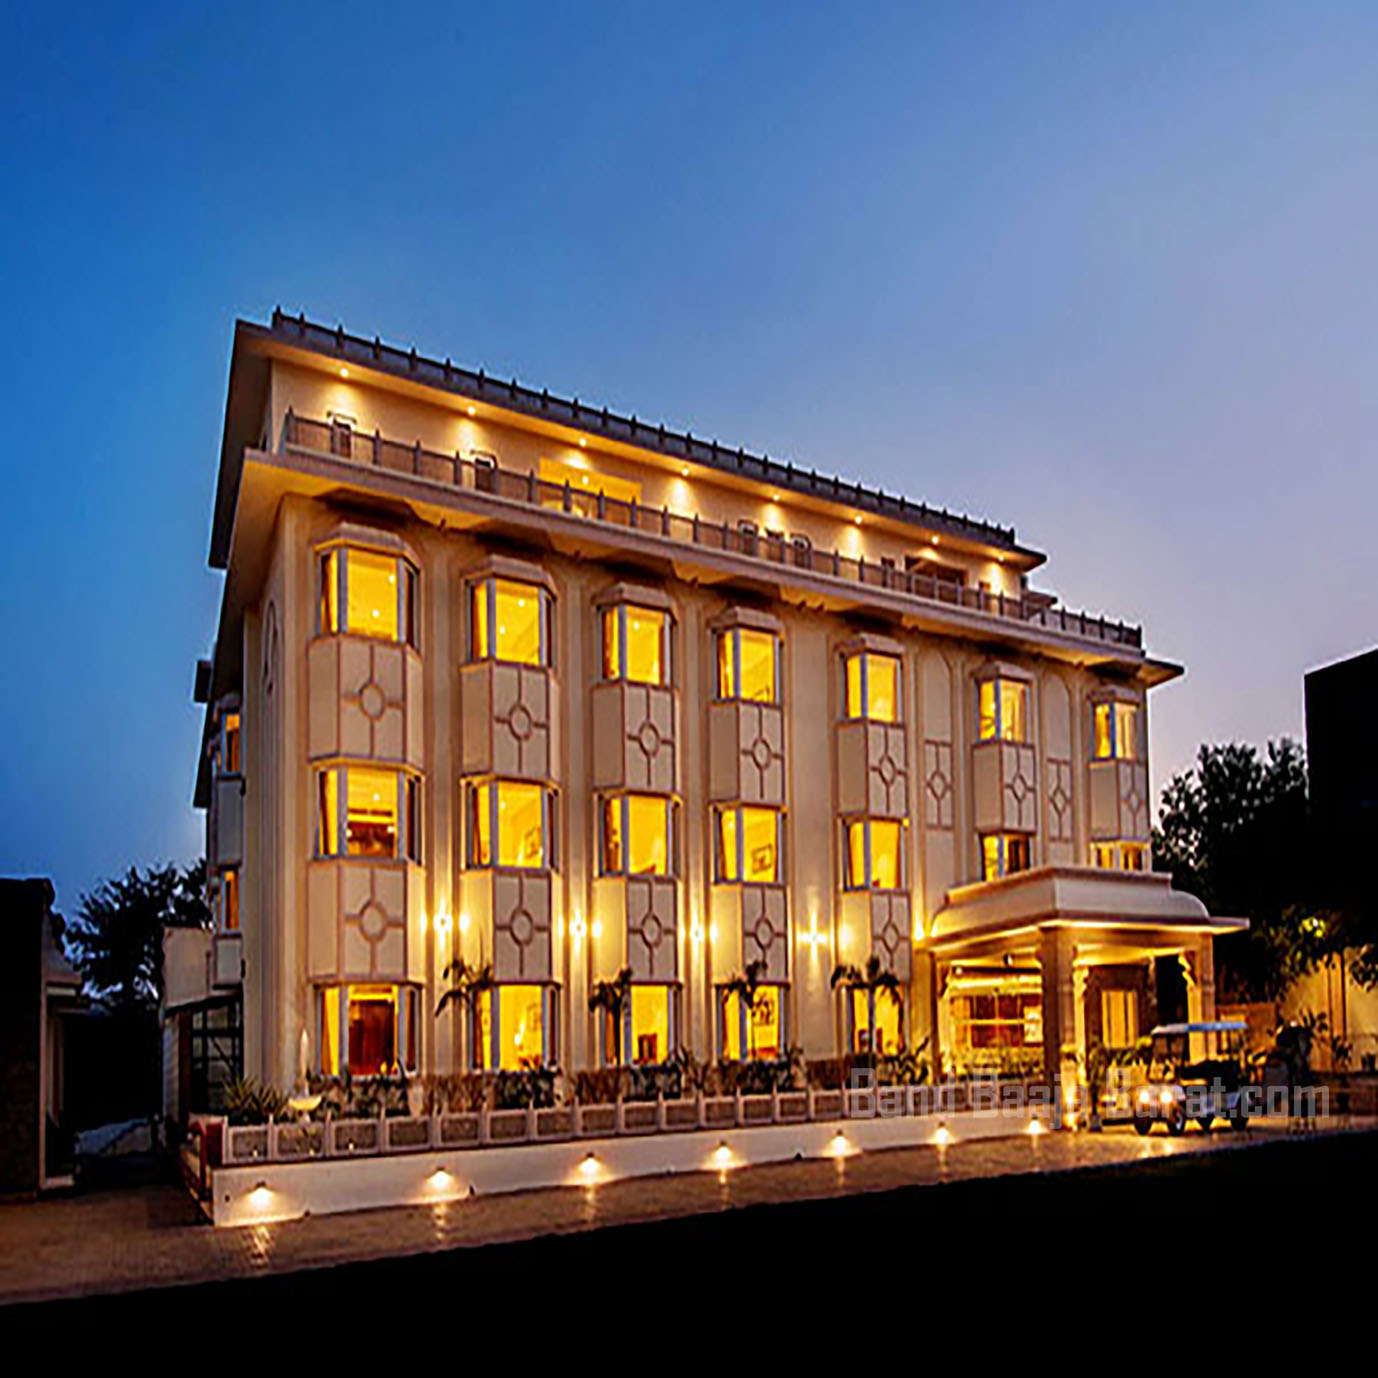 kk royal Hotel & convention centre amer jaipur